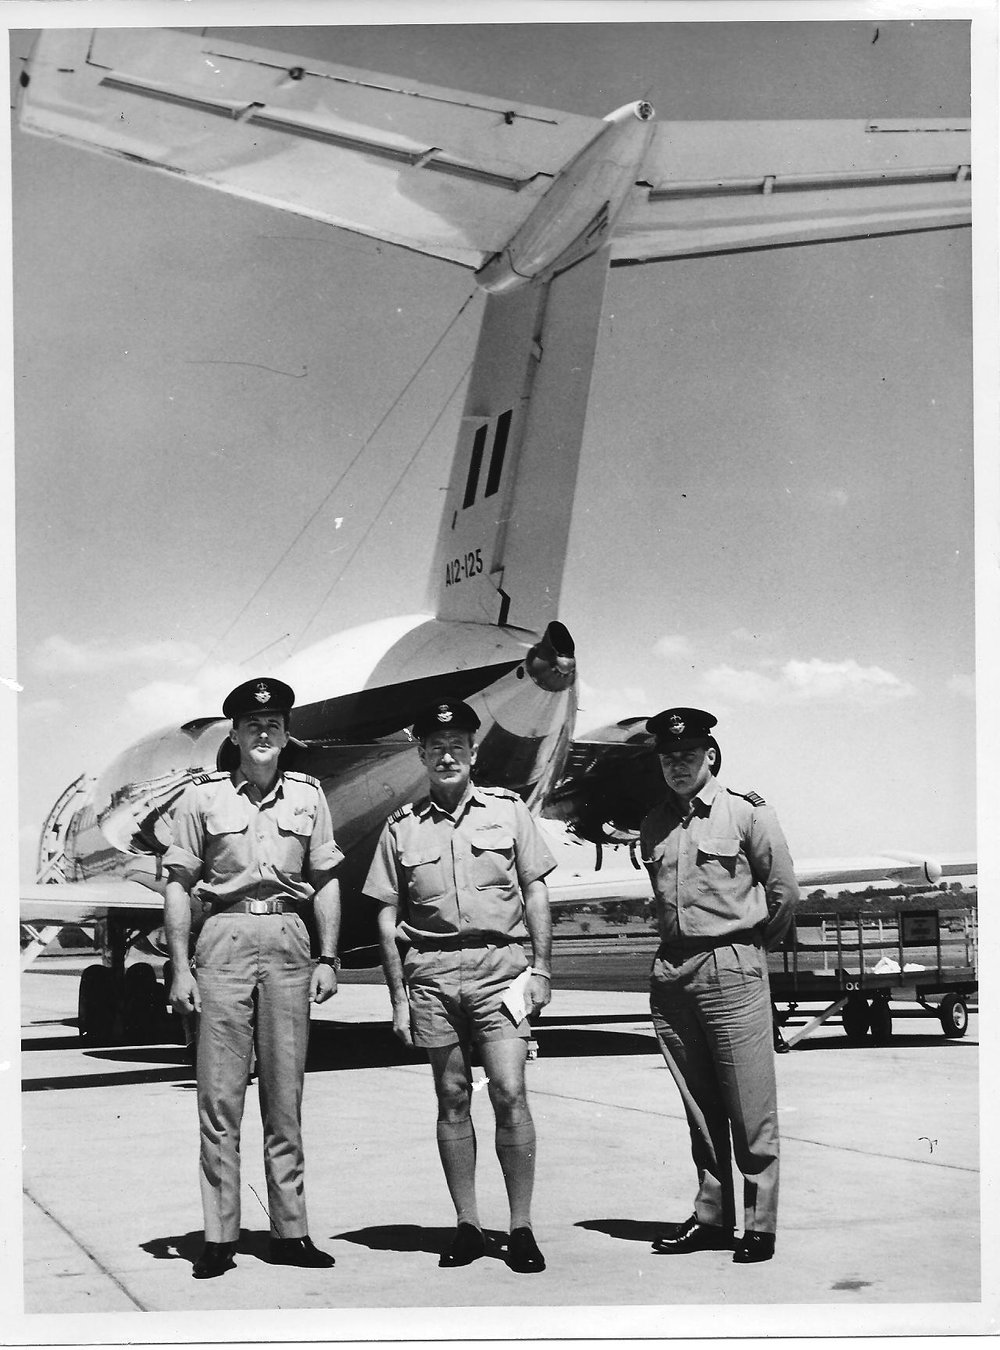 BAC 1-11 Ferry Crew 1968.jpg